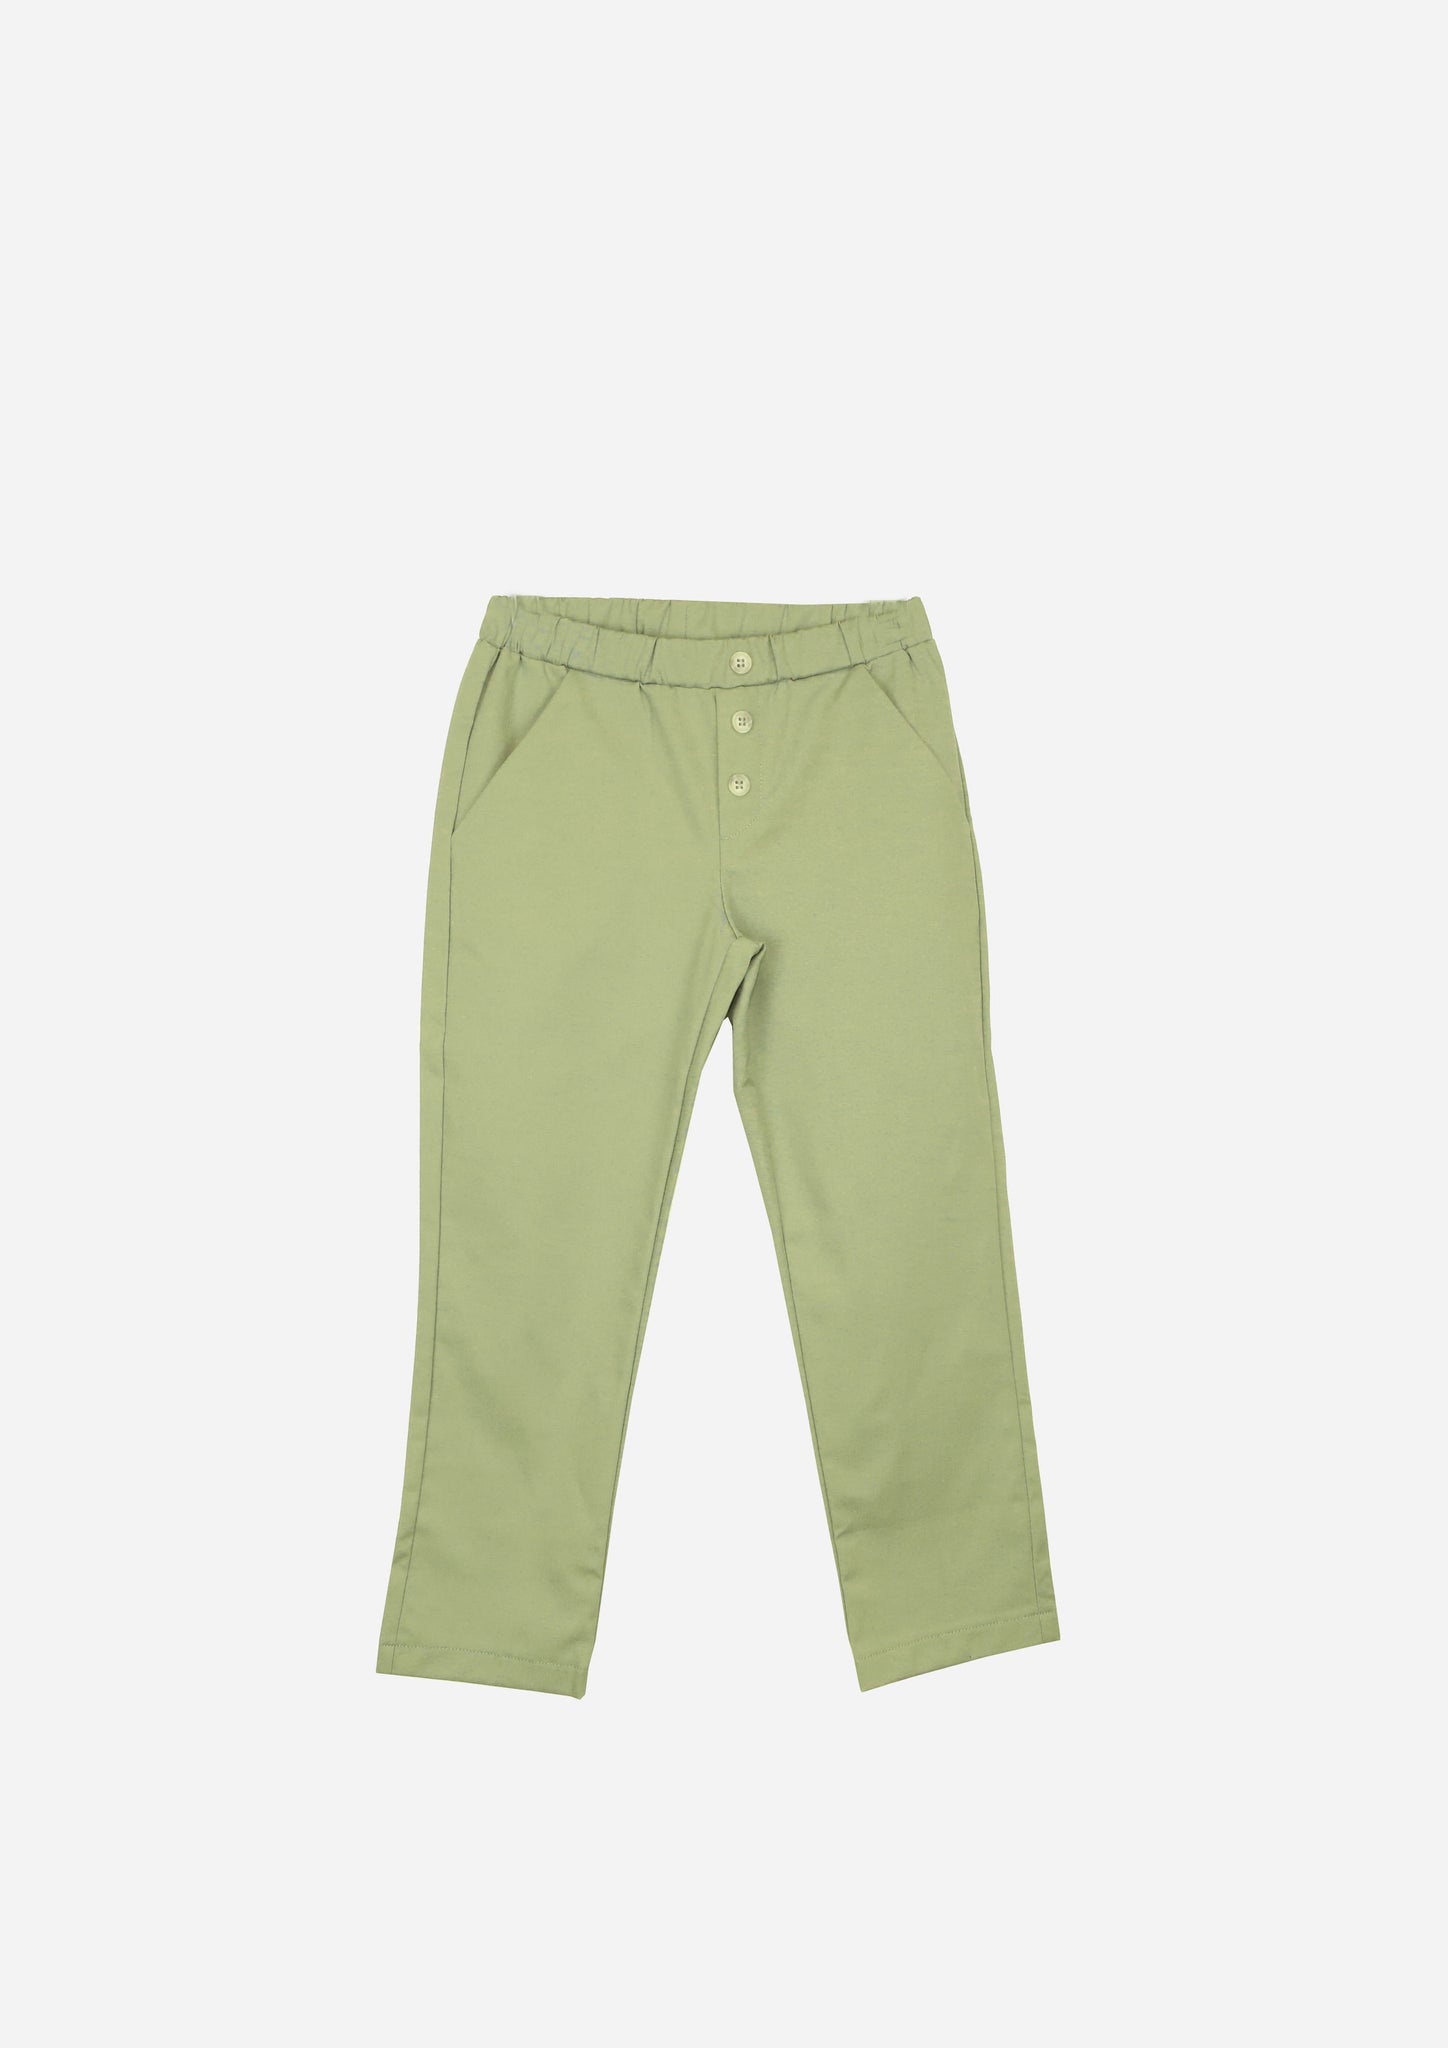 Pantalone RUBEN Verde salvia-Pantaloni e Shorts-I Leoncini Shop